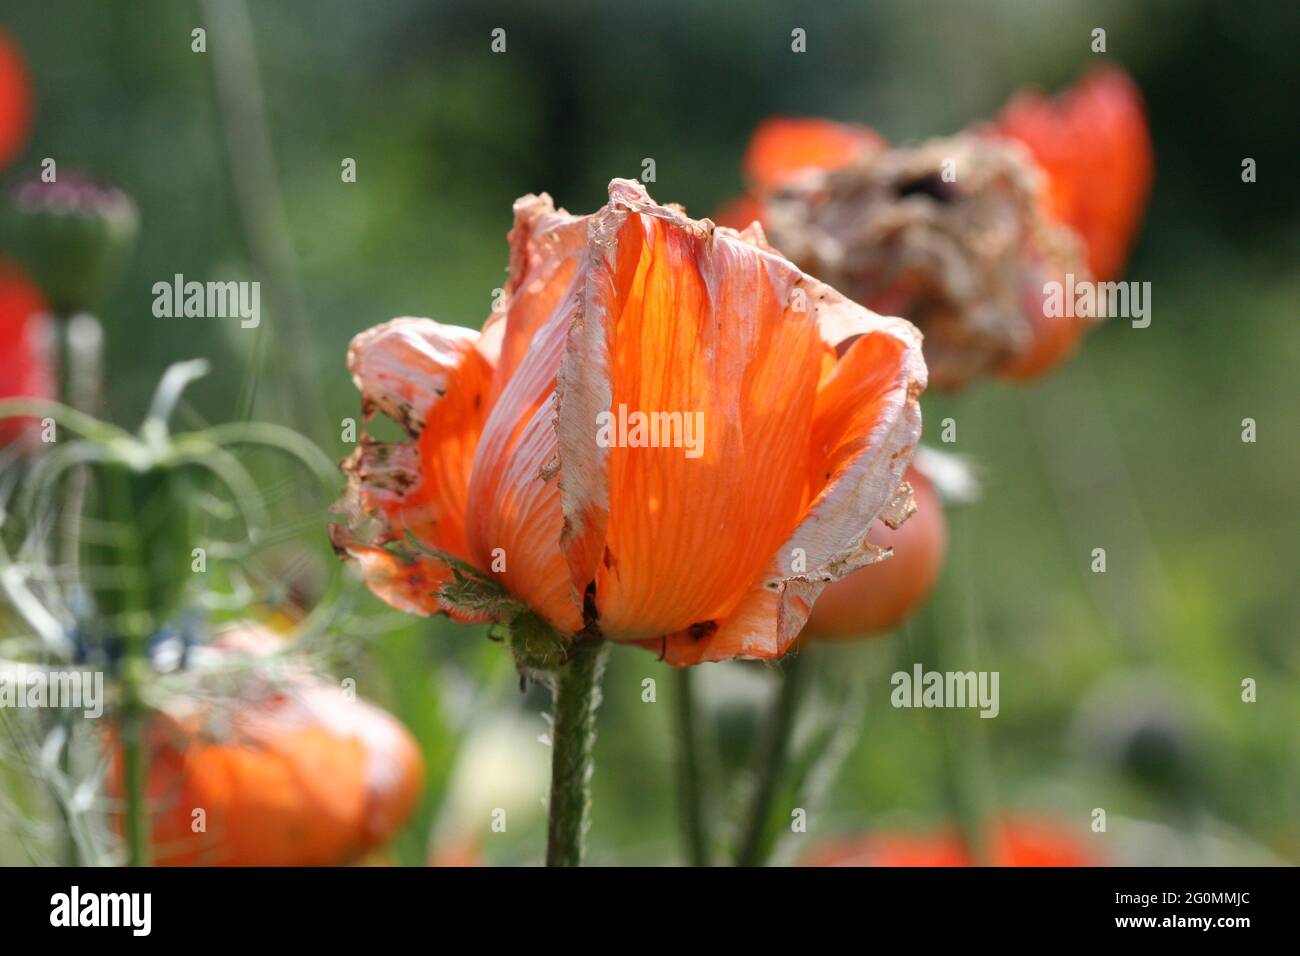 Ein orangefarbener Mohn (orientalischer Mohn des Prinzen von Orange) am Ende der Saison mit welkenden, bräunenden Blütenblättern wie Seidenpapier in voller Sonne Stockfoto